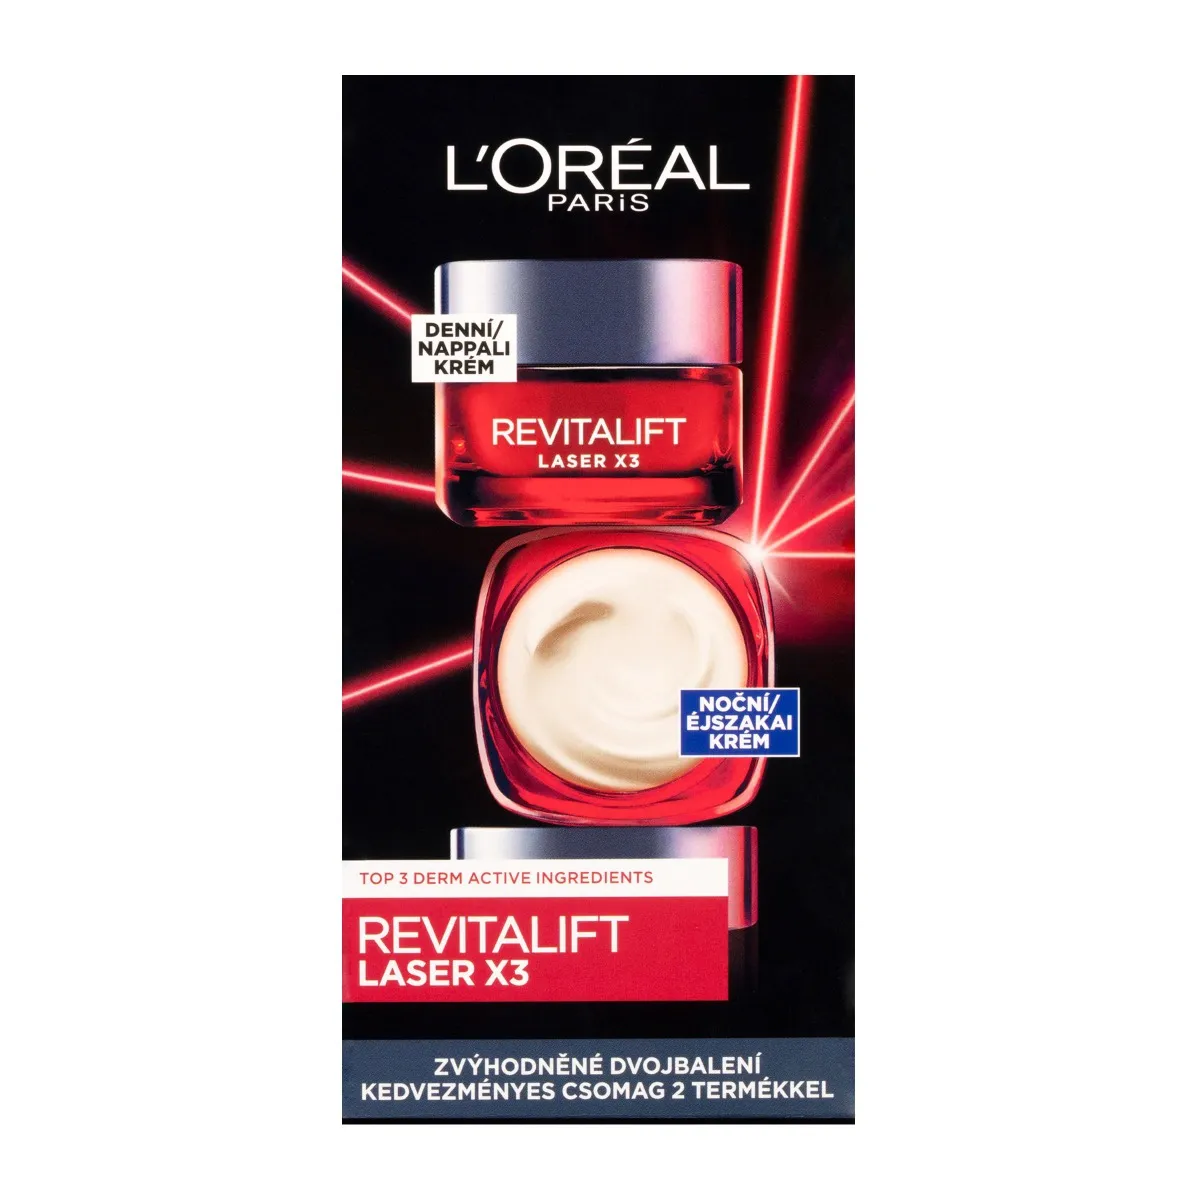 Loréal Paris Revitalift Laser X3 Duopack denní a noční krém 2x50 ml